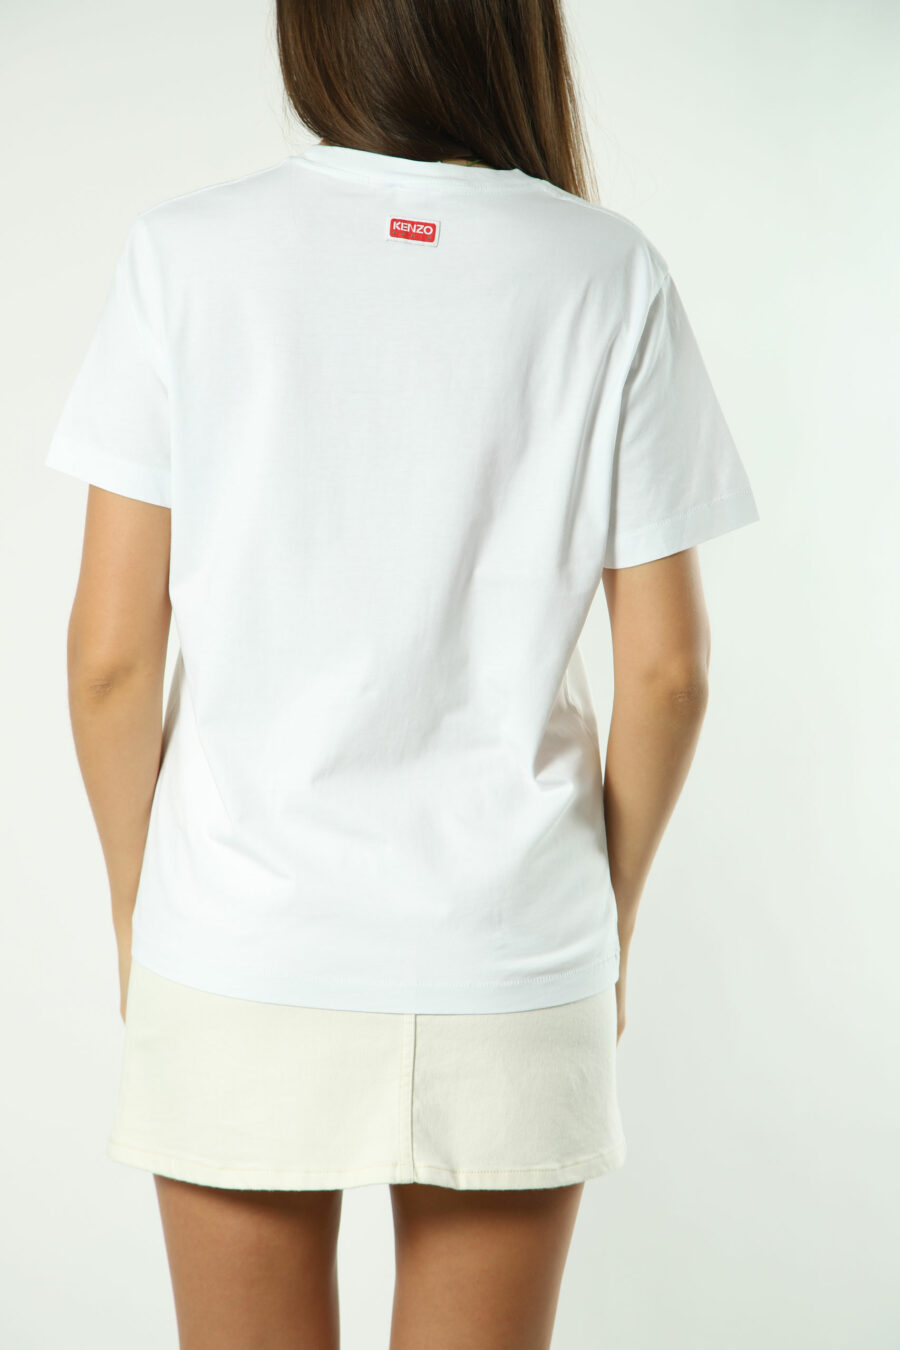 T-shirt branca com maxilogo de flores laranja - Fotos 1383